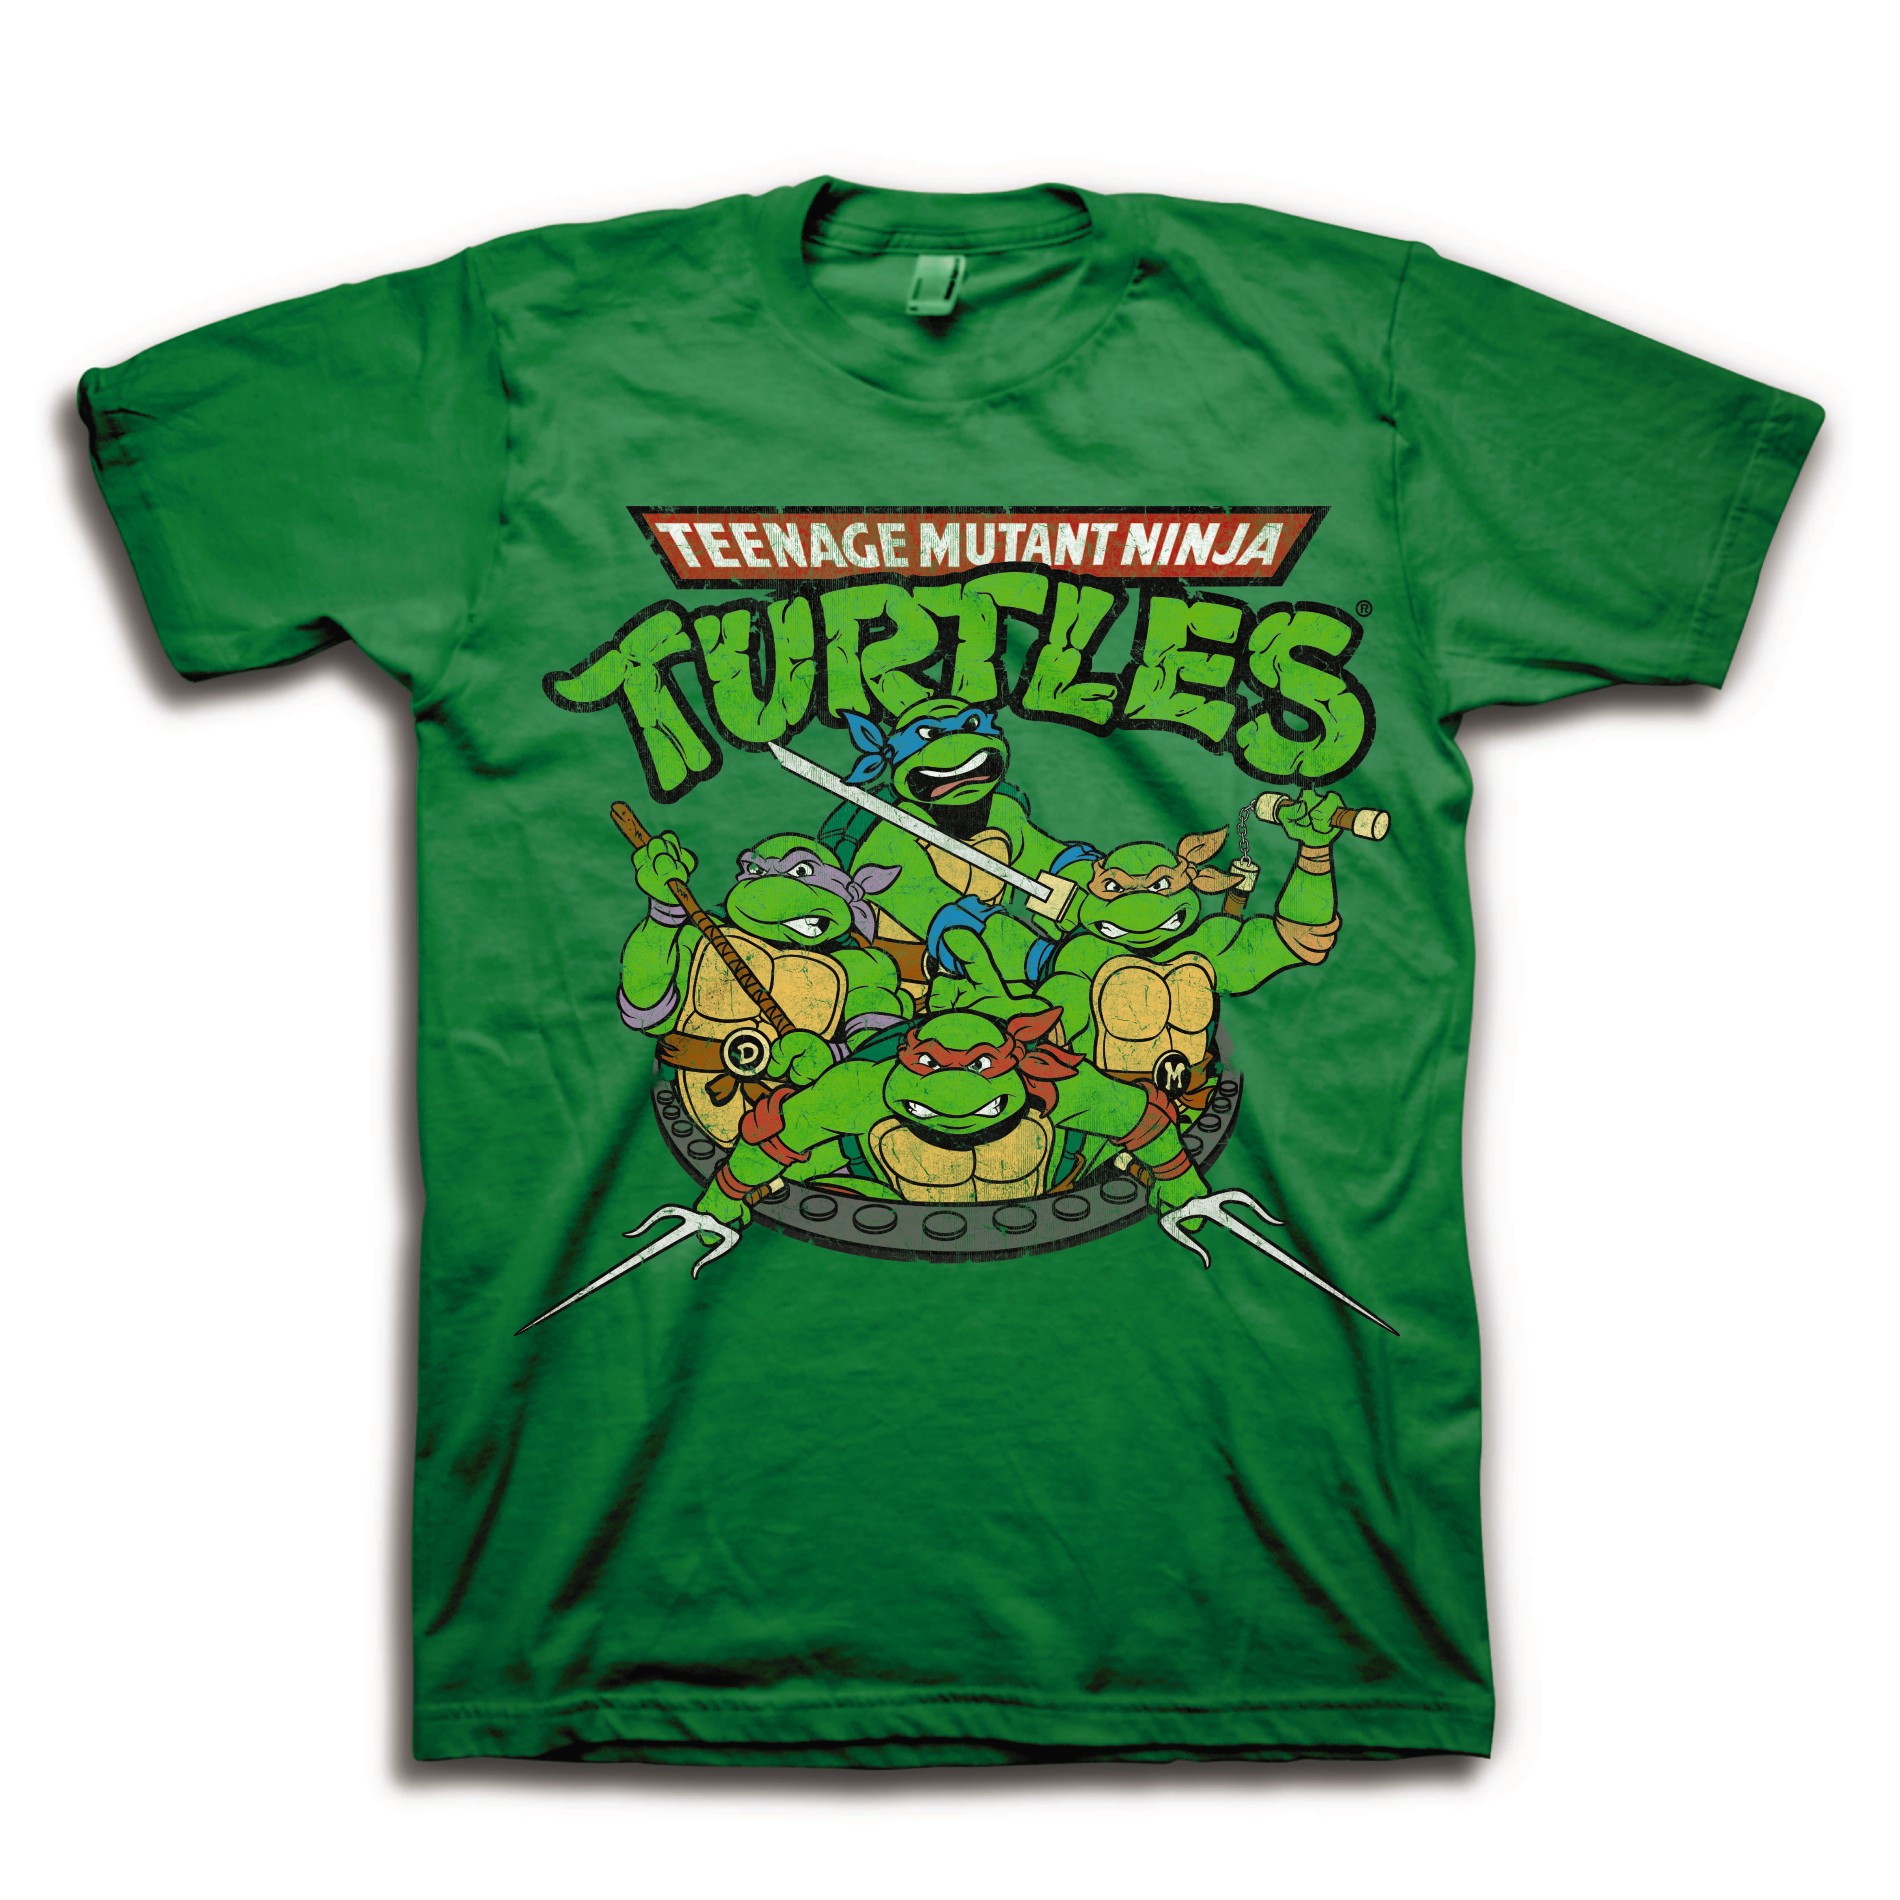 Nickelodeon Teenage Mutant Ninja Turtles Men's Graphic T-Shirt